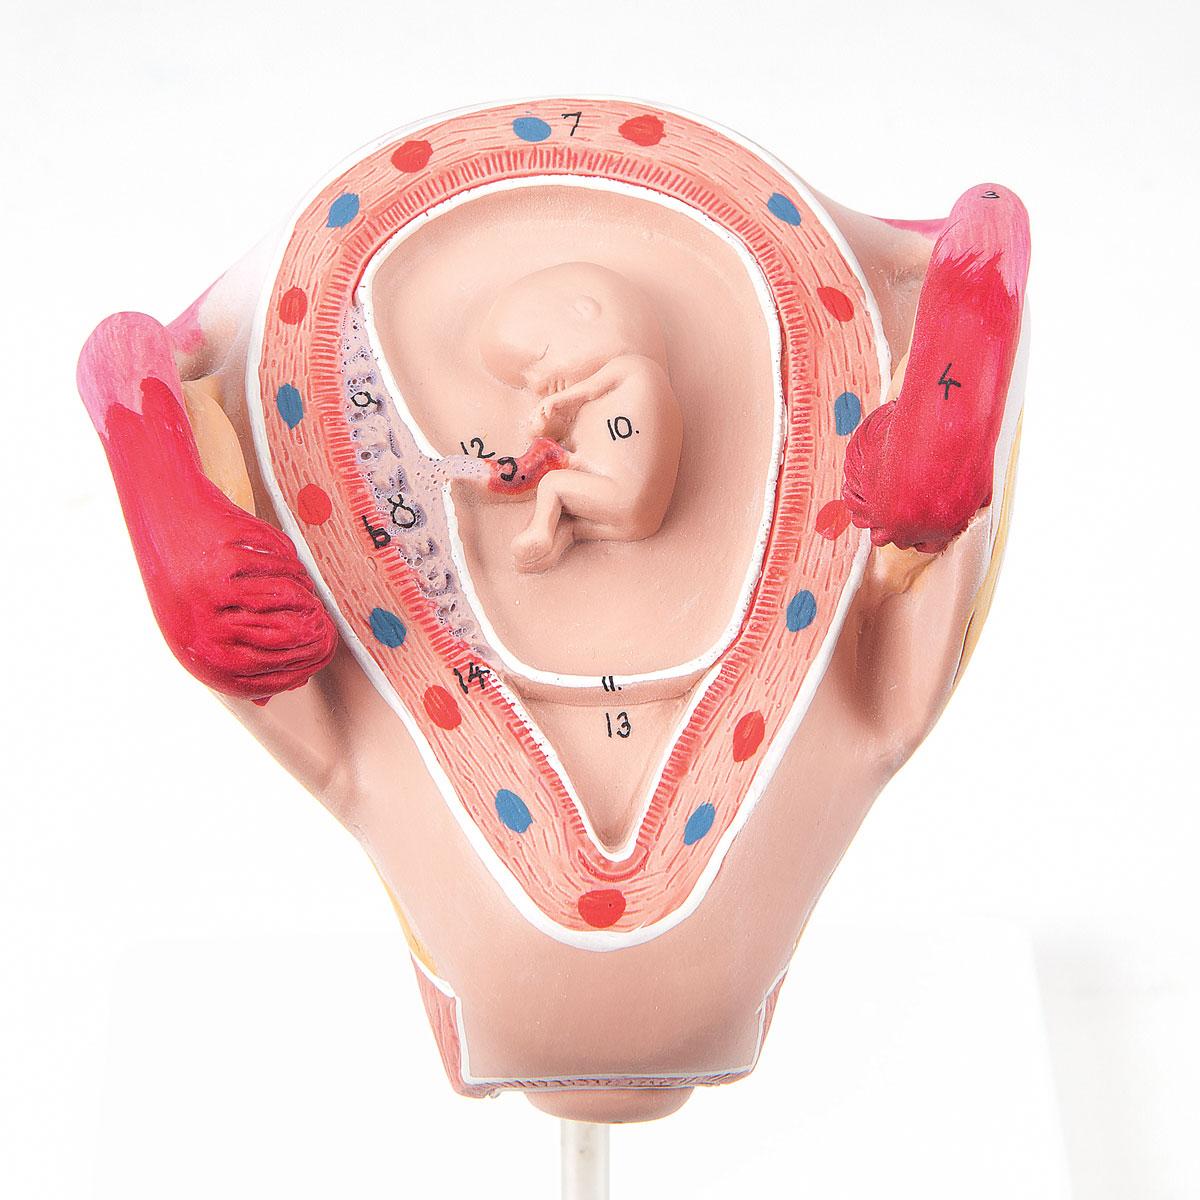 L10-2-1 Těhotenství, porod: Embryo 2. měsíc